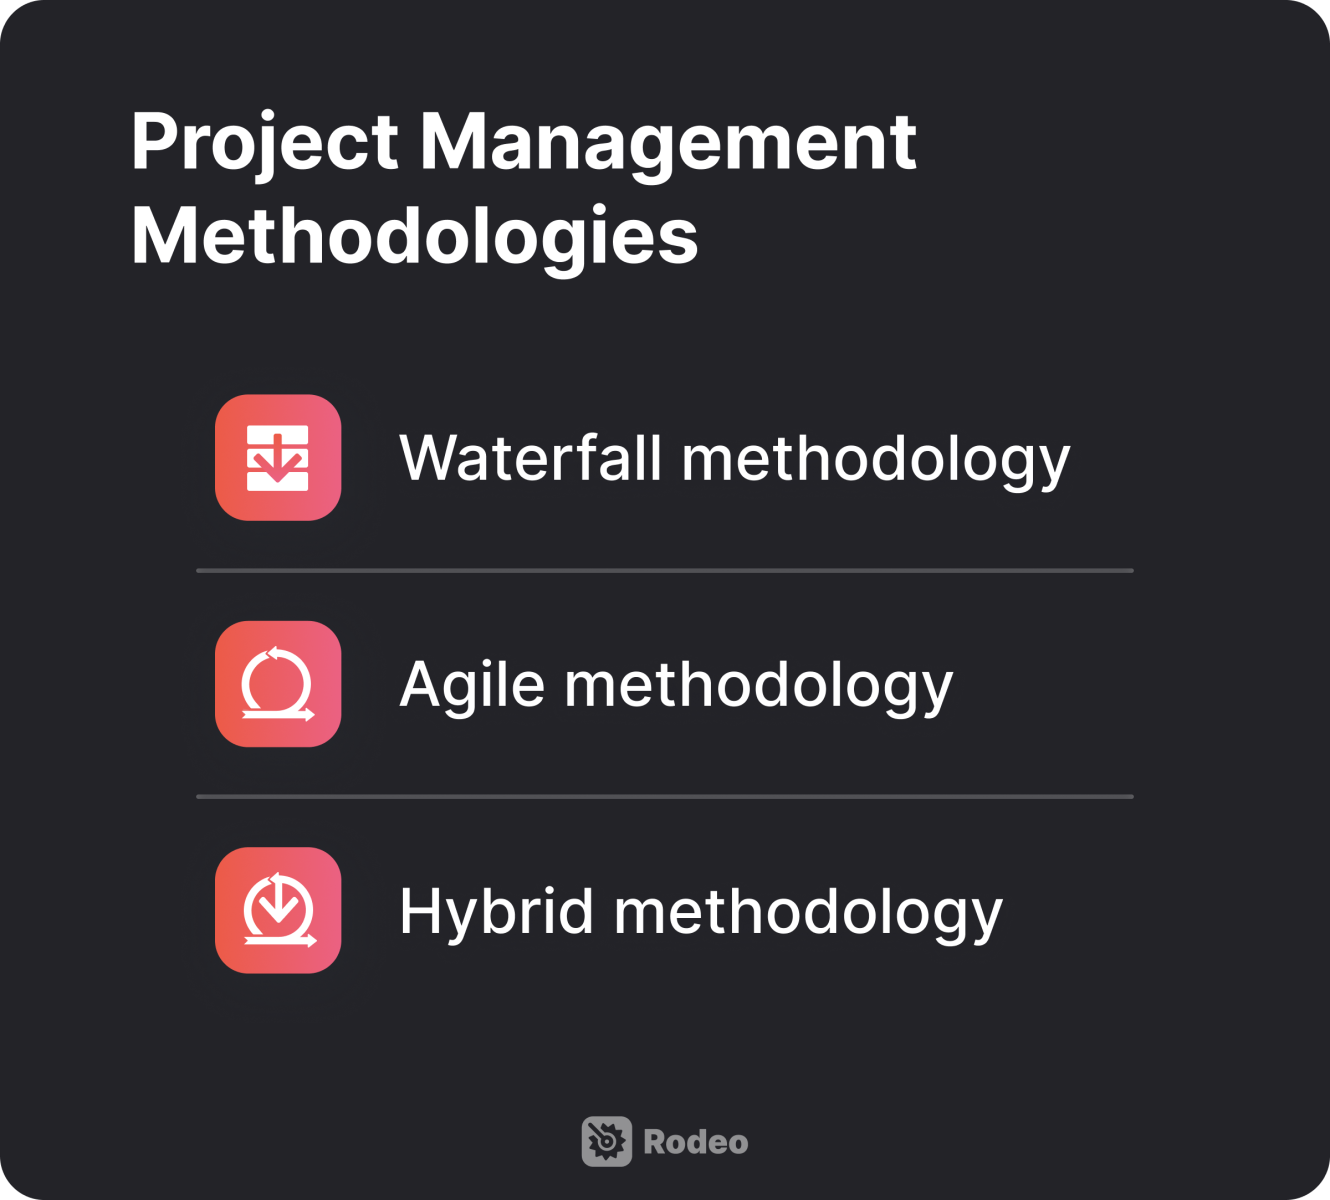 Project Management methods